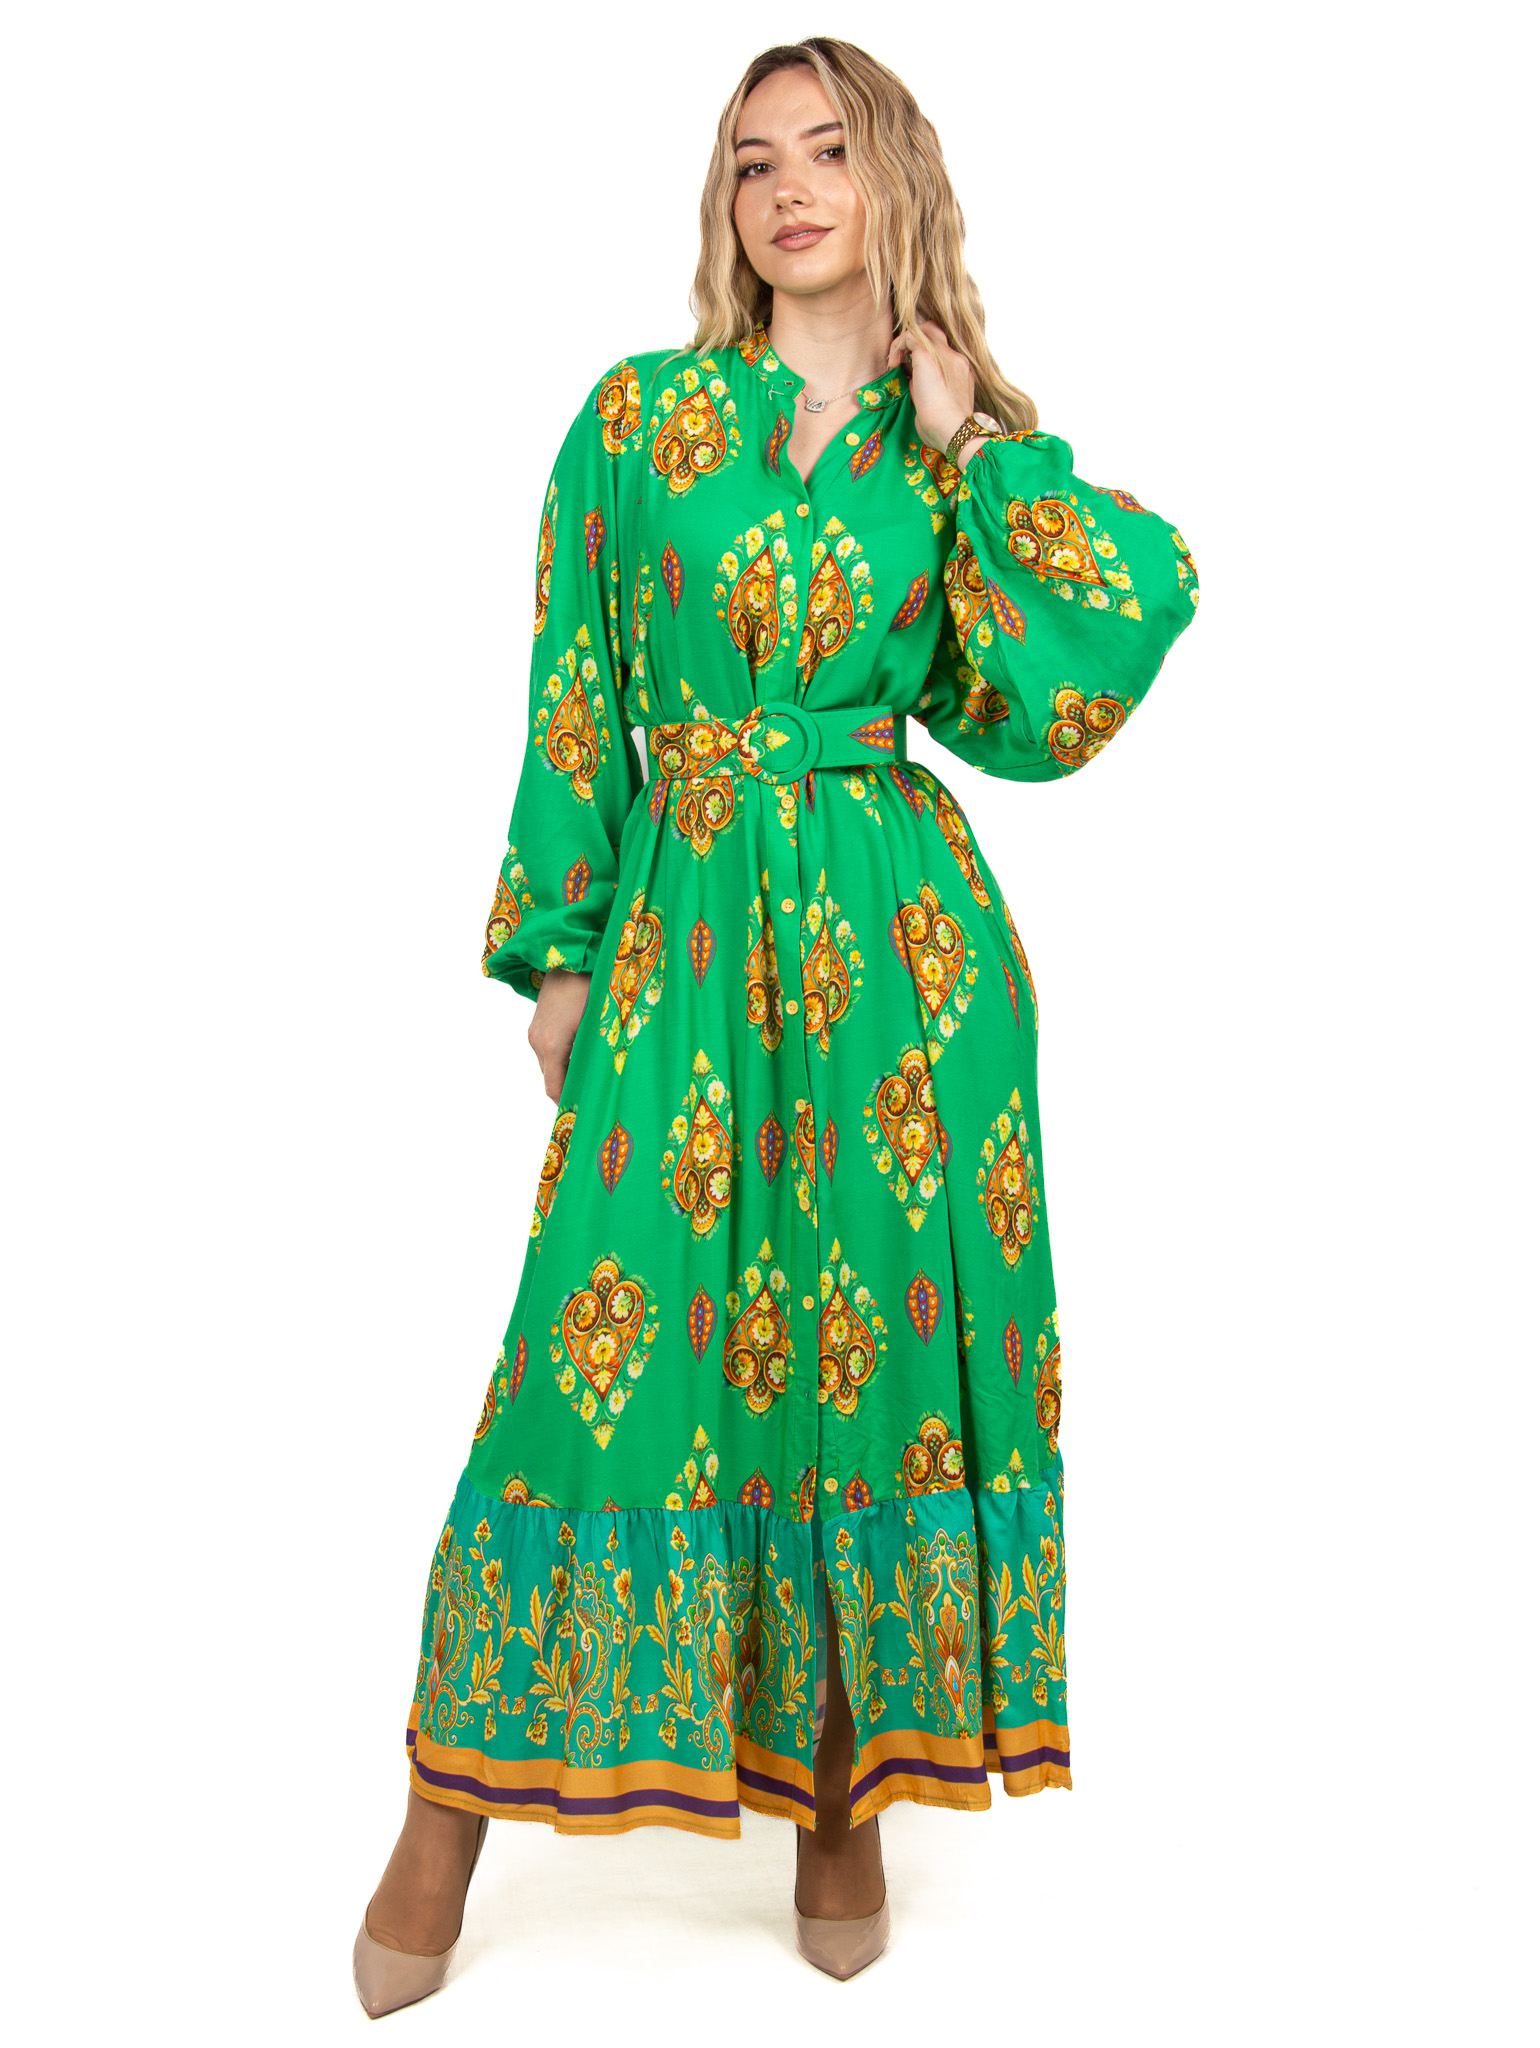 Φόρεμα Σεμιζιέ με Ζώνη Πράσινο | EllenBoutique